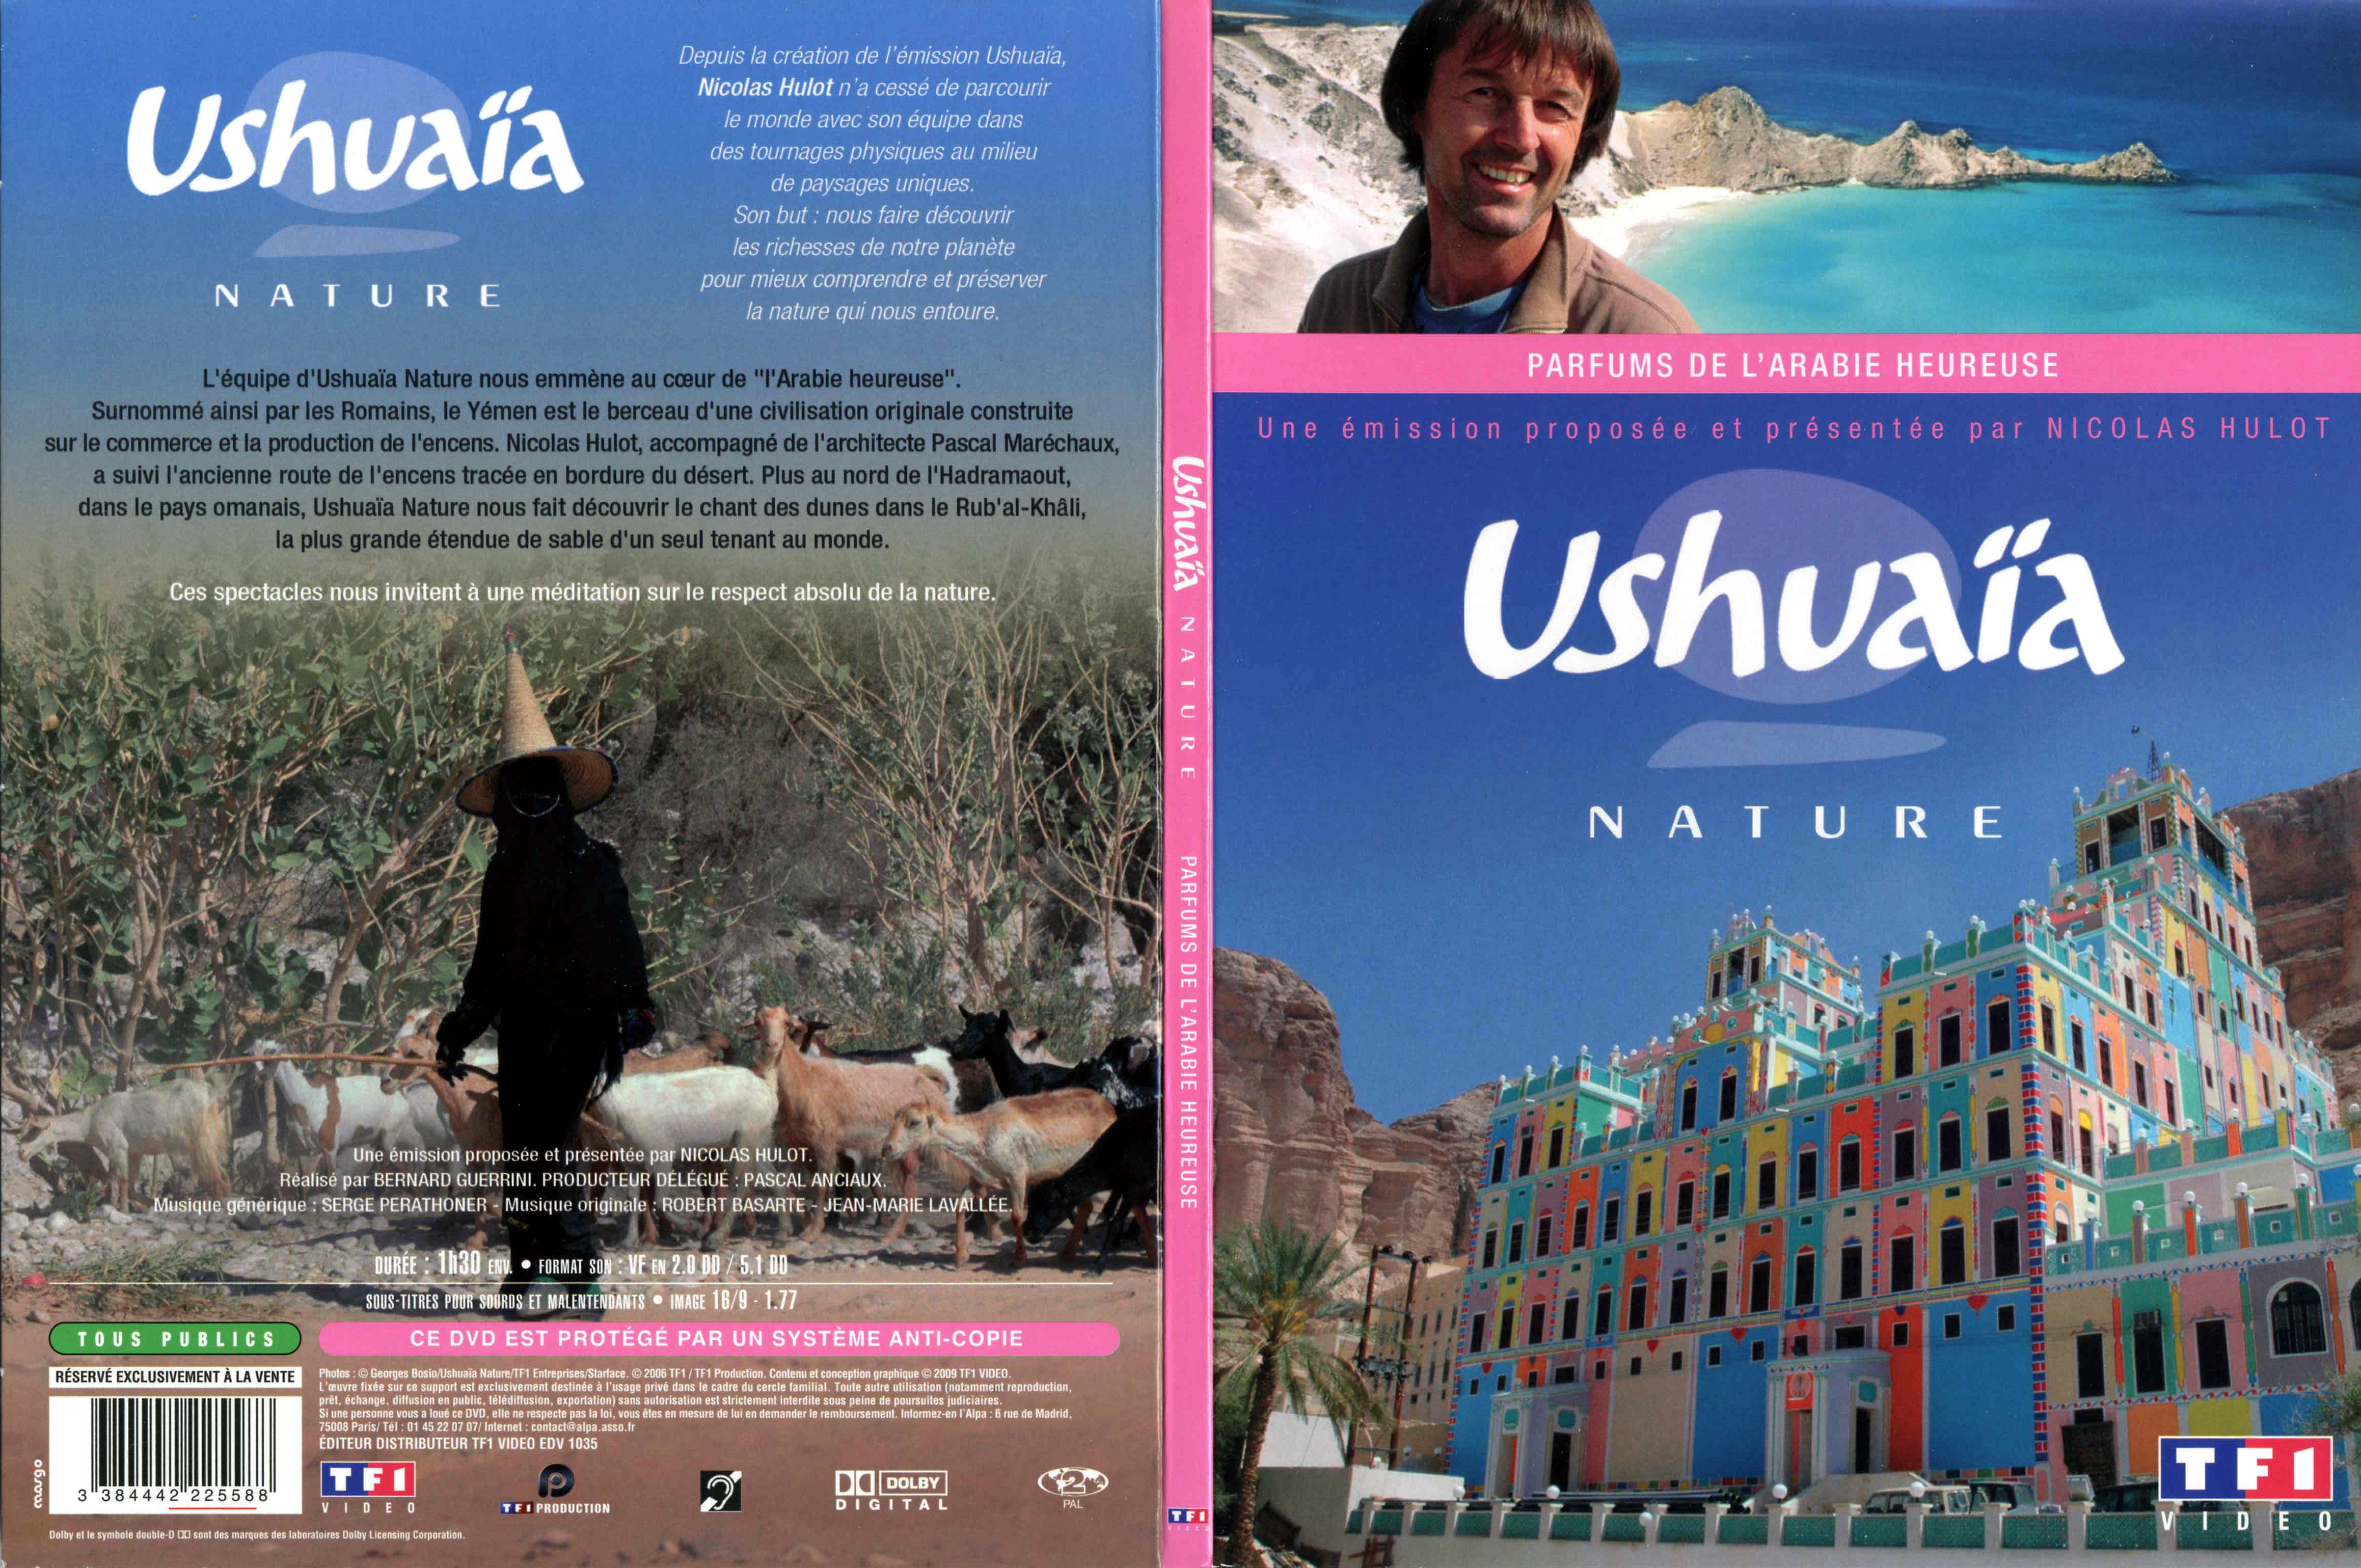 Jaquette DVD Ushuaia Nature - Parfums de l